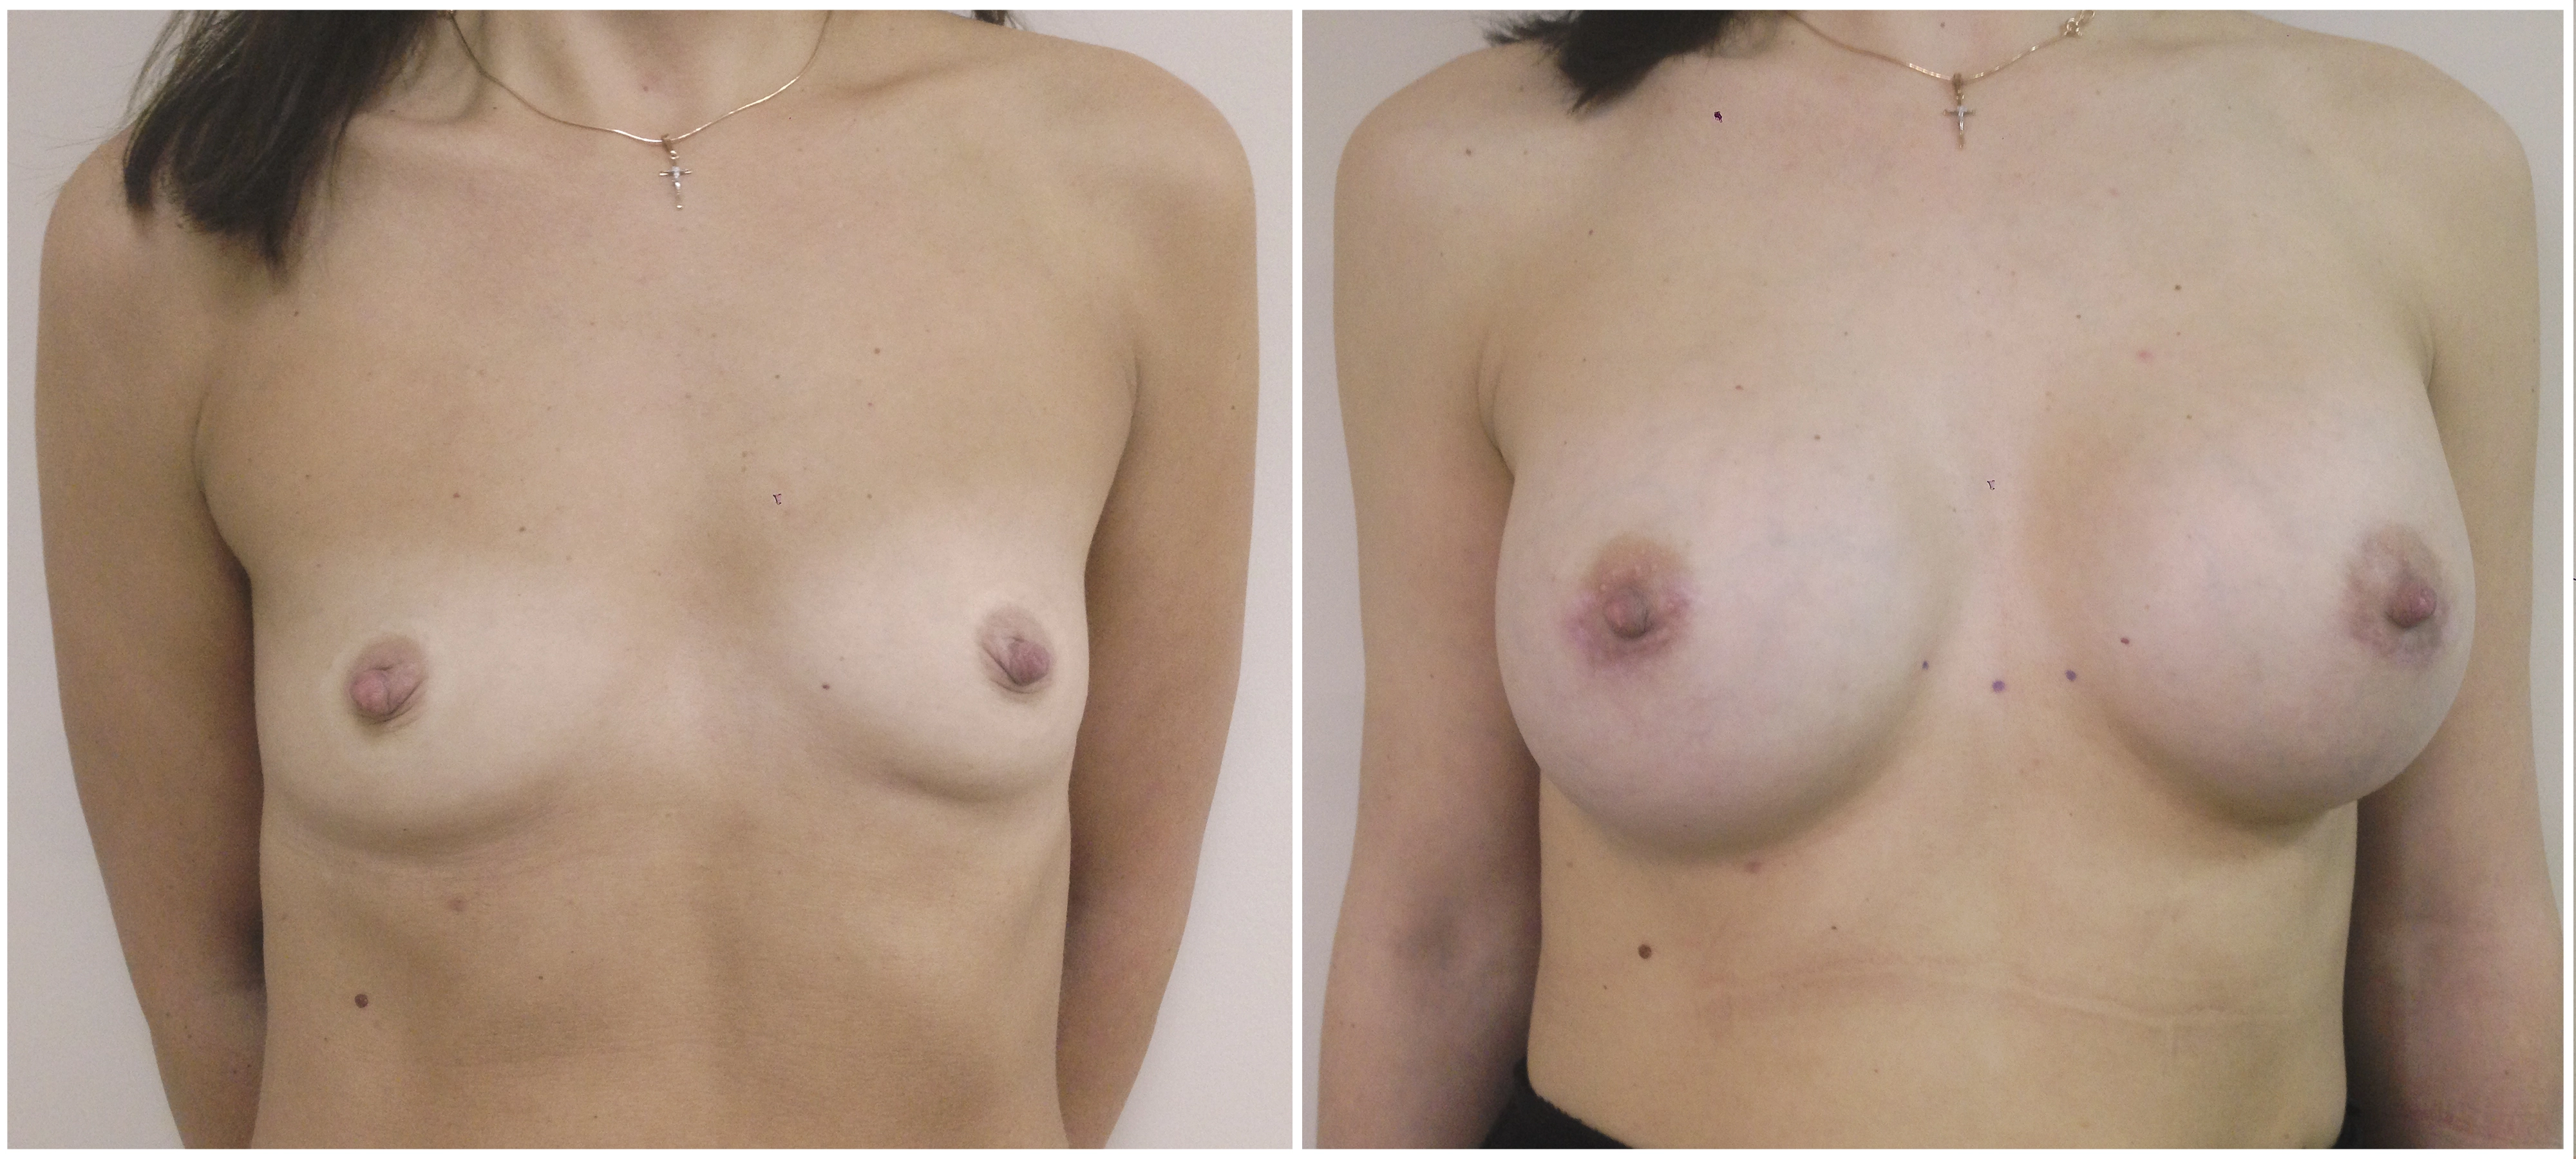 Трансаксиллярное увеличение груди имплантами. 6 месяцев после операции. Хирург:  Коваль Сергей Николаевич